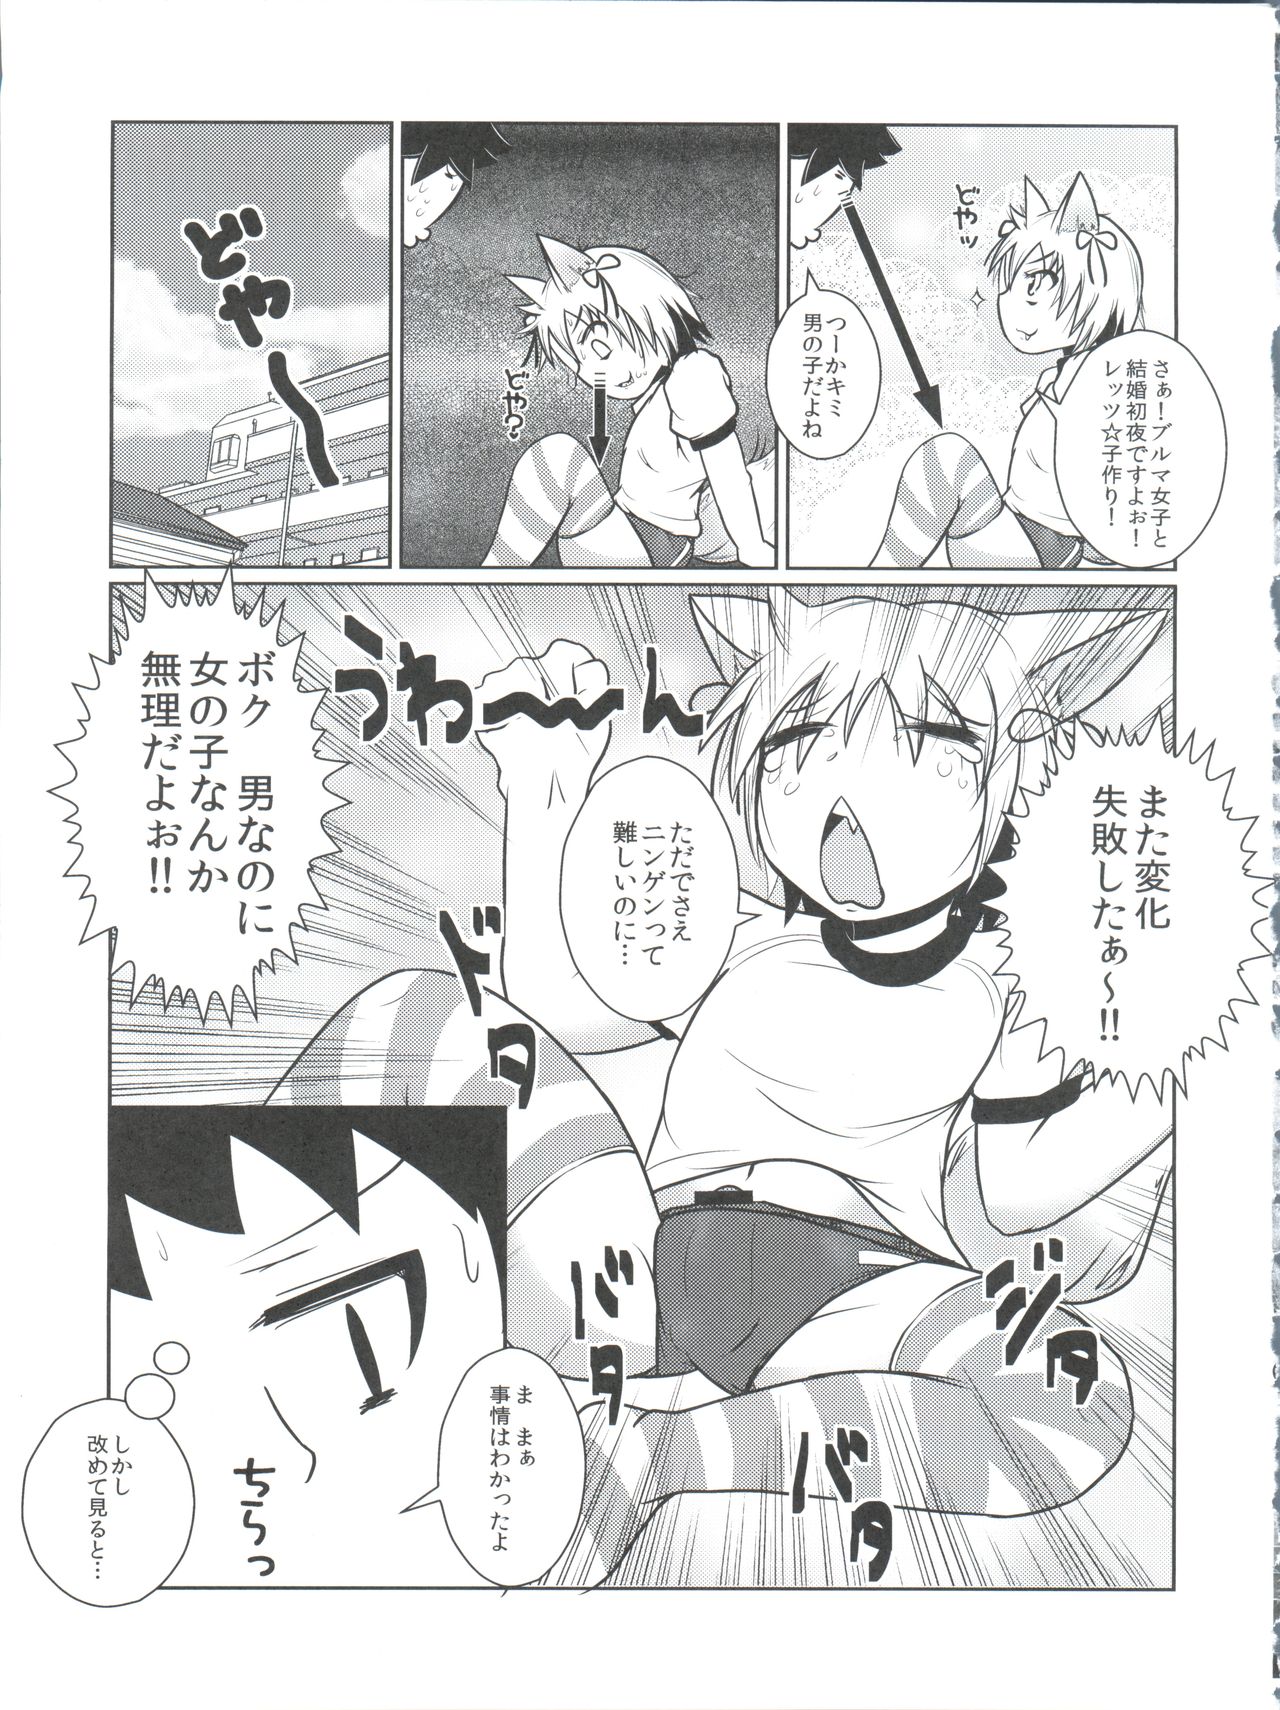 (Nyosoket!) [Scratch Jikkou Iinkai (Various)] Nyosoket Anthology page 11 full